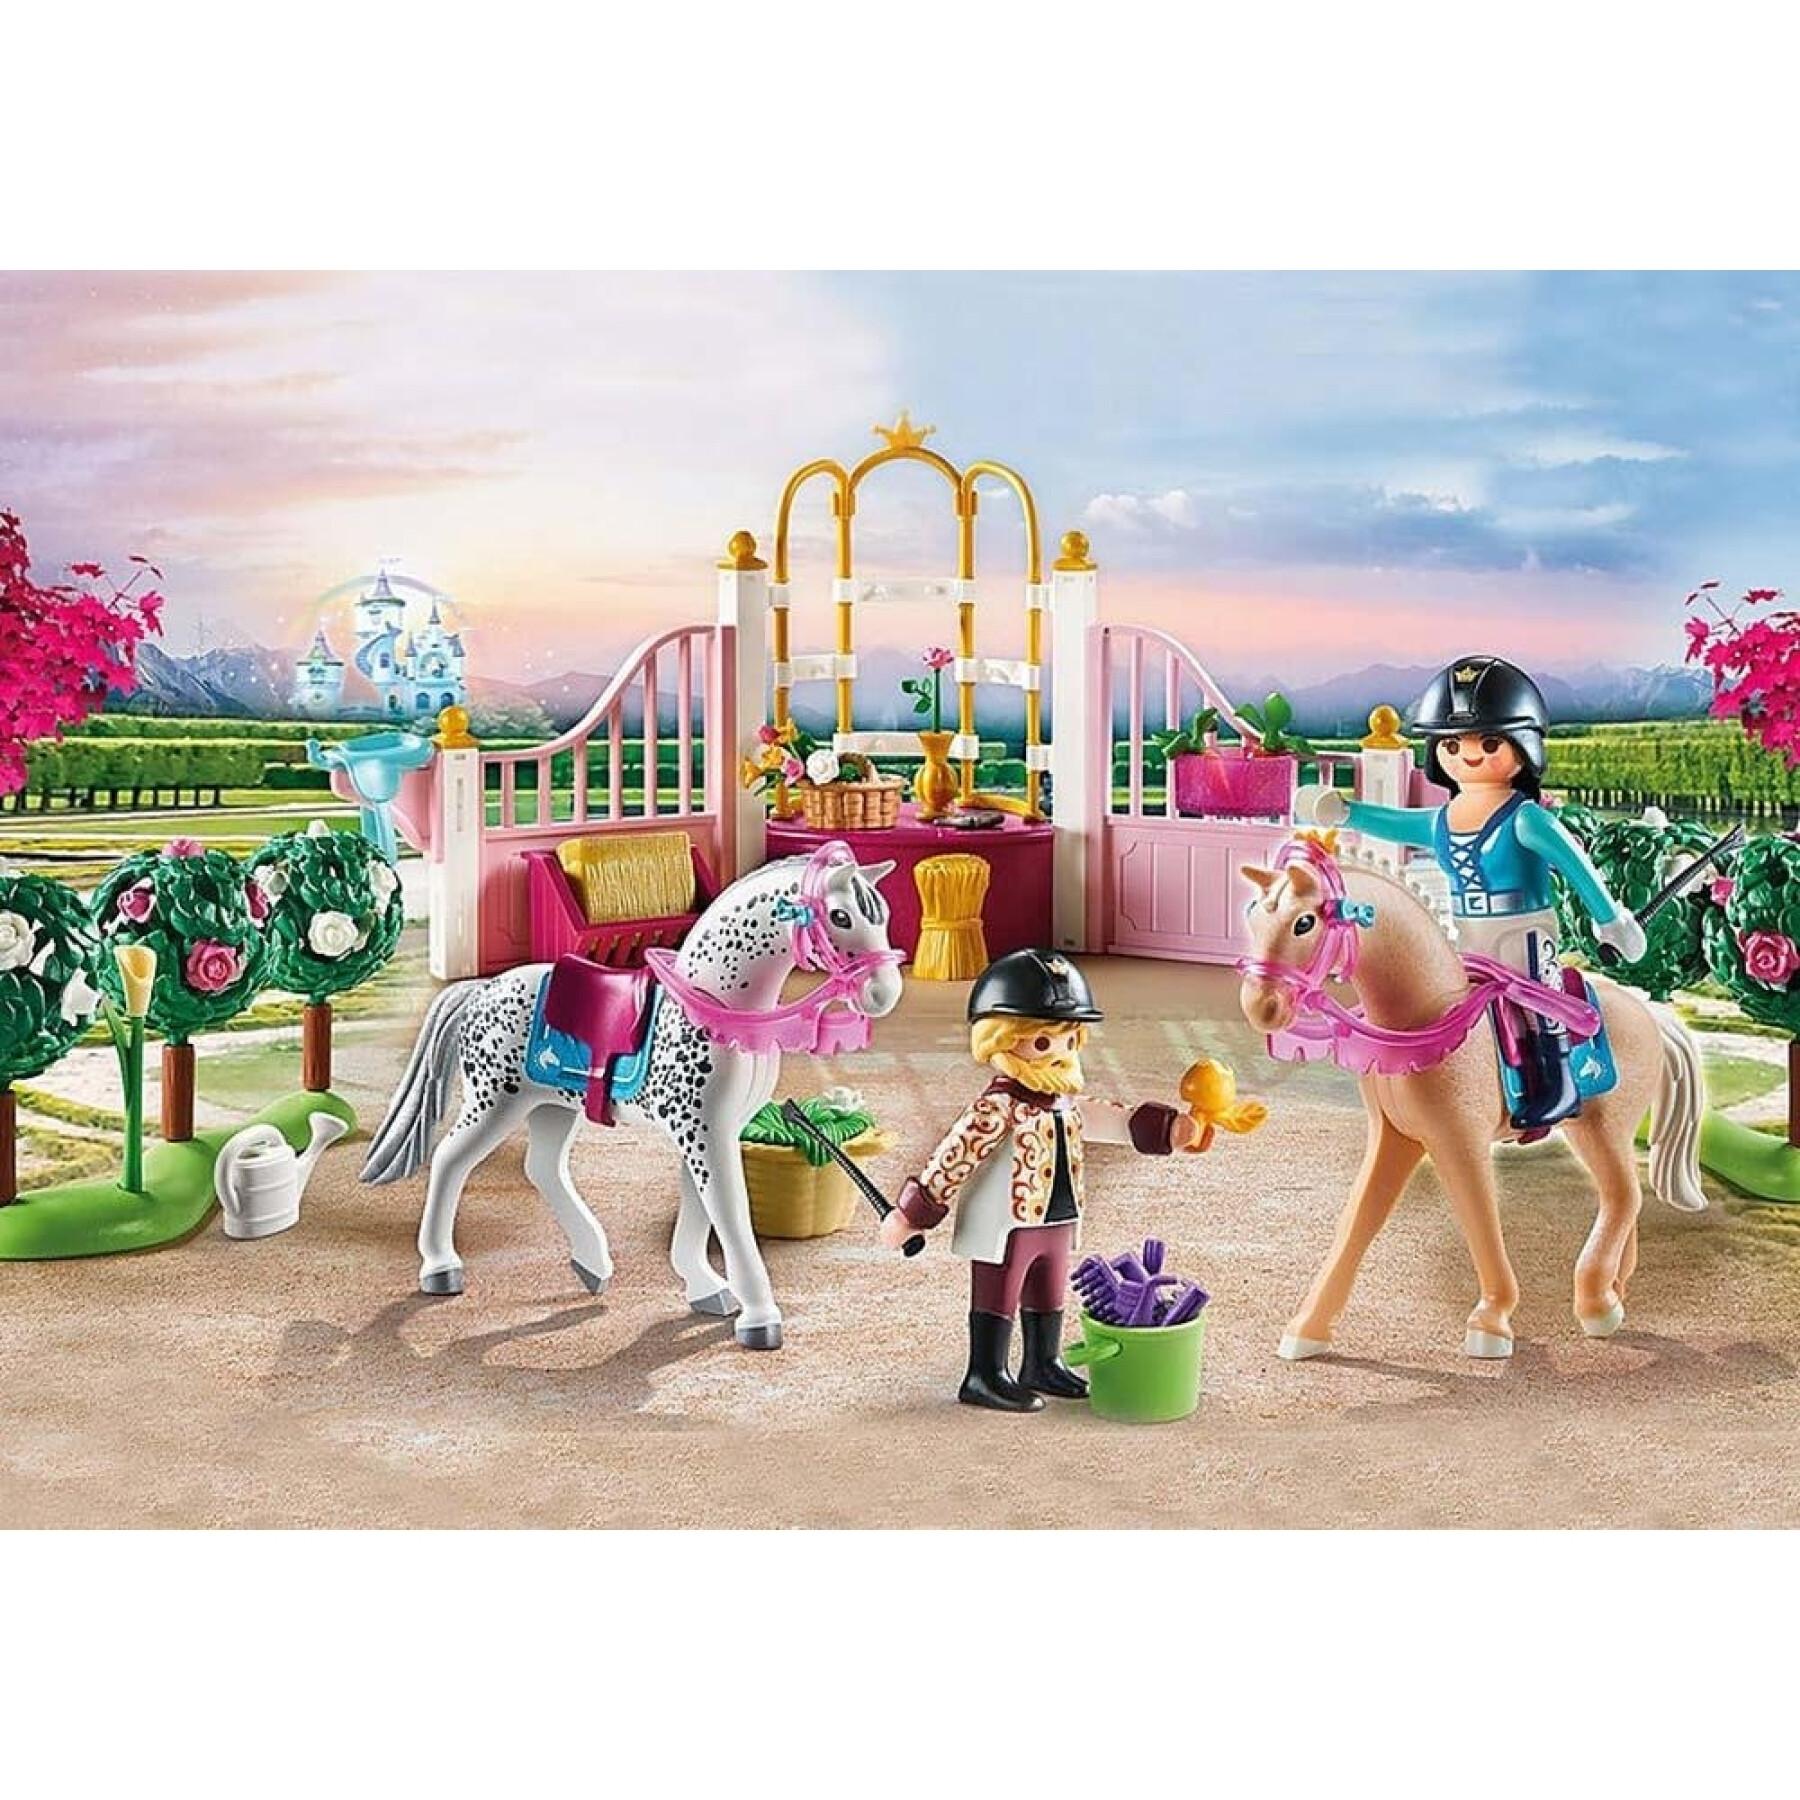 Aulas de equitação para princesas Playmobil